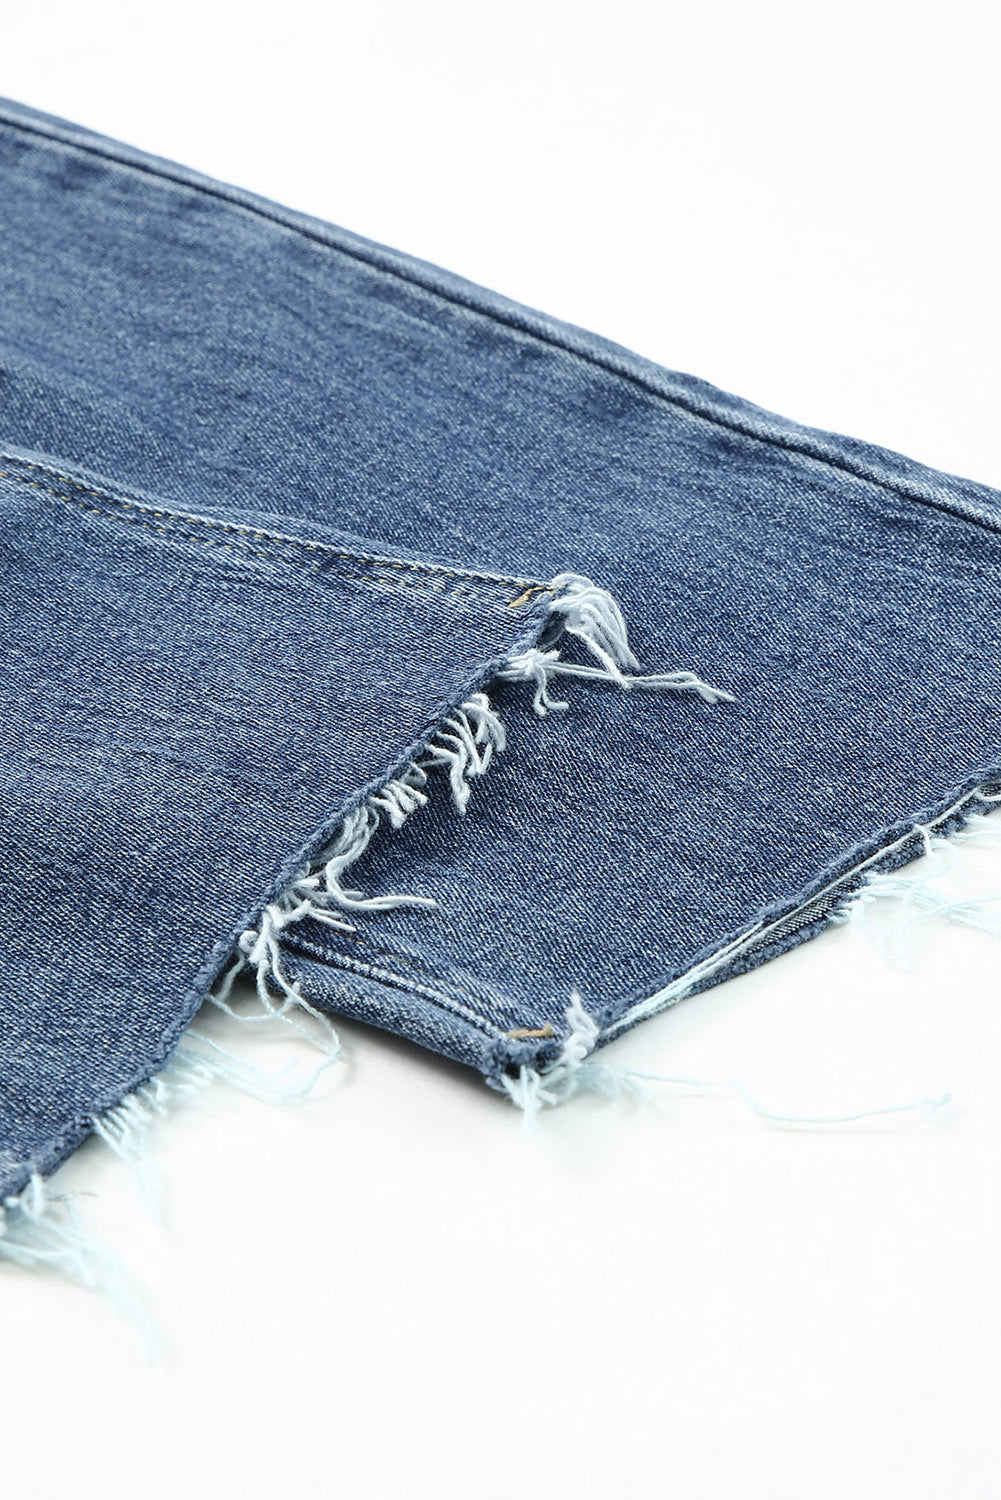 Jeans larghi con gambe dritte strappate a vita alta blu cielo